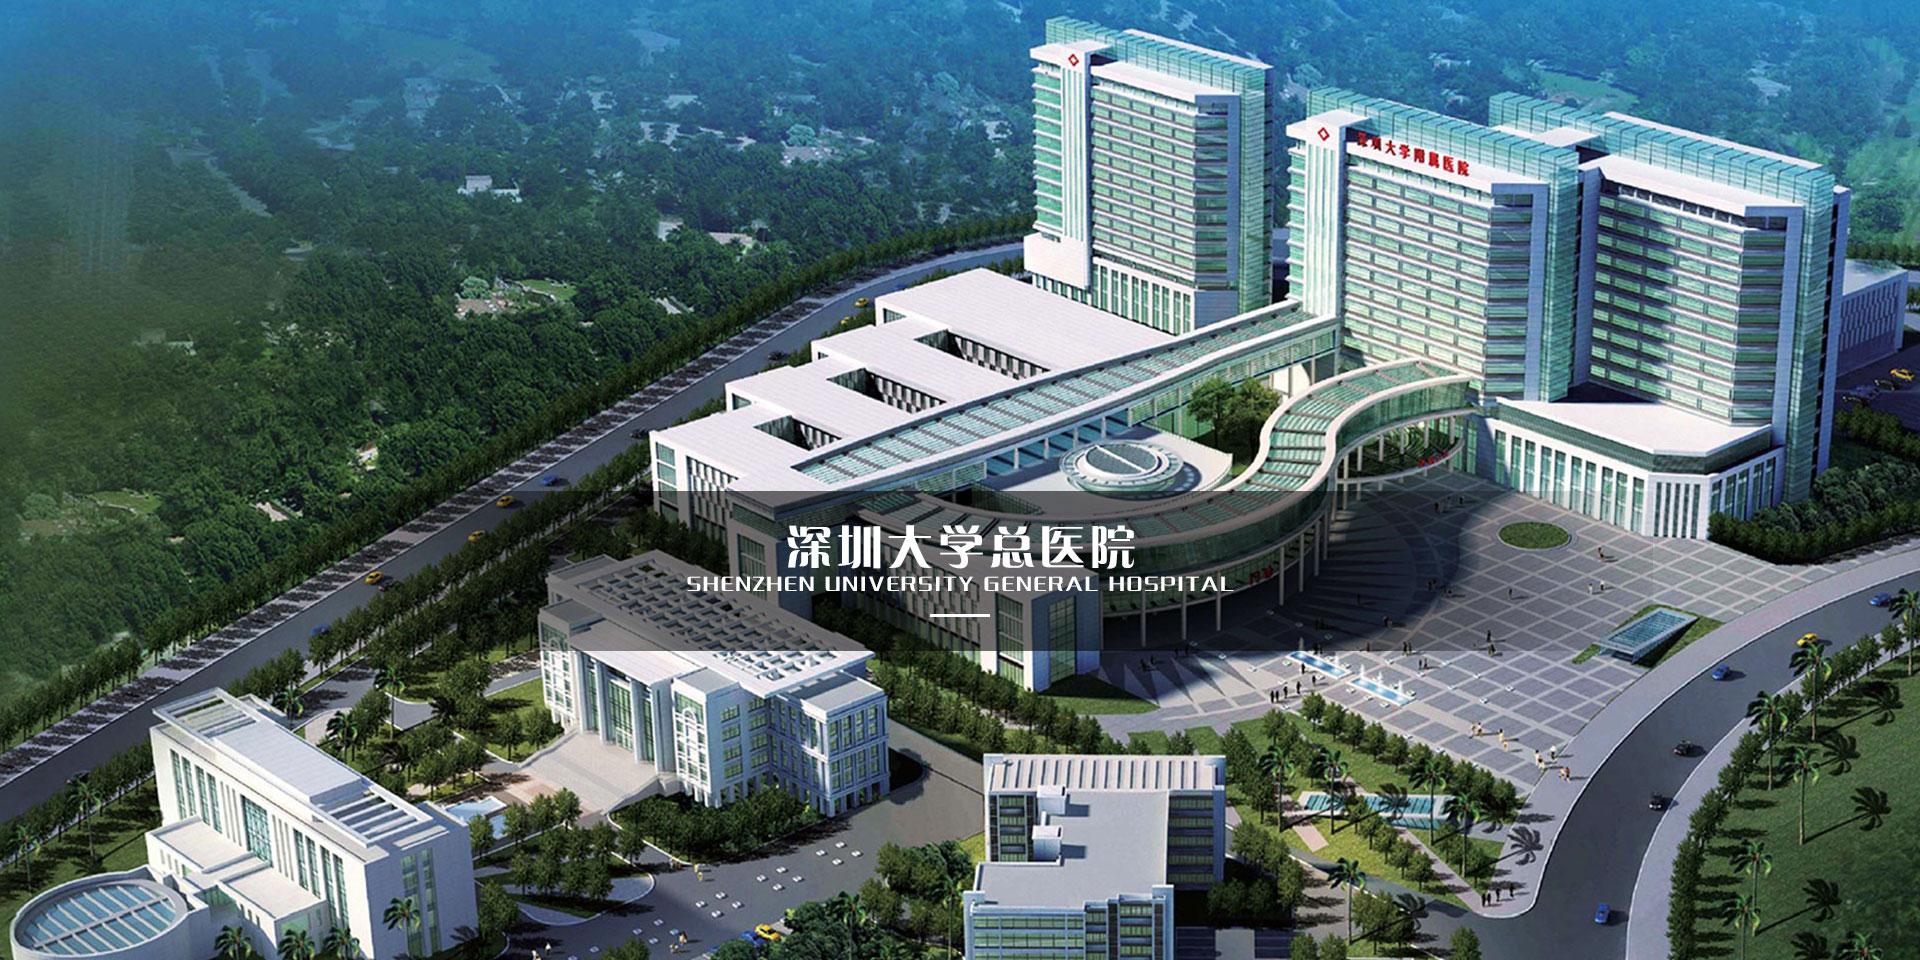 【已竣工】深圳大學總醫院獲選“全國十佳醫院“